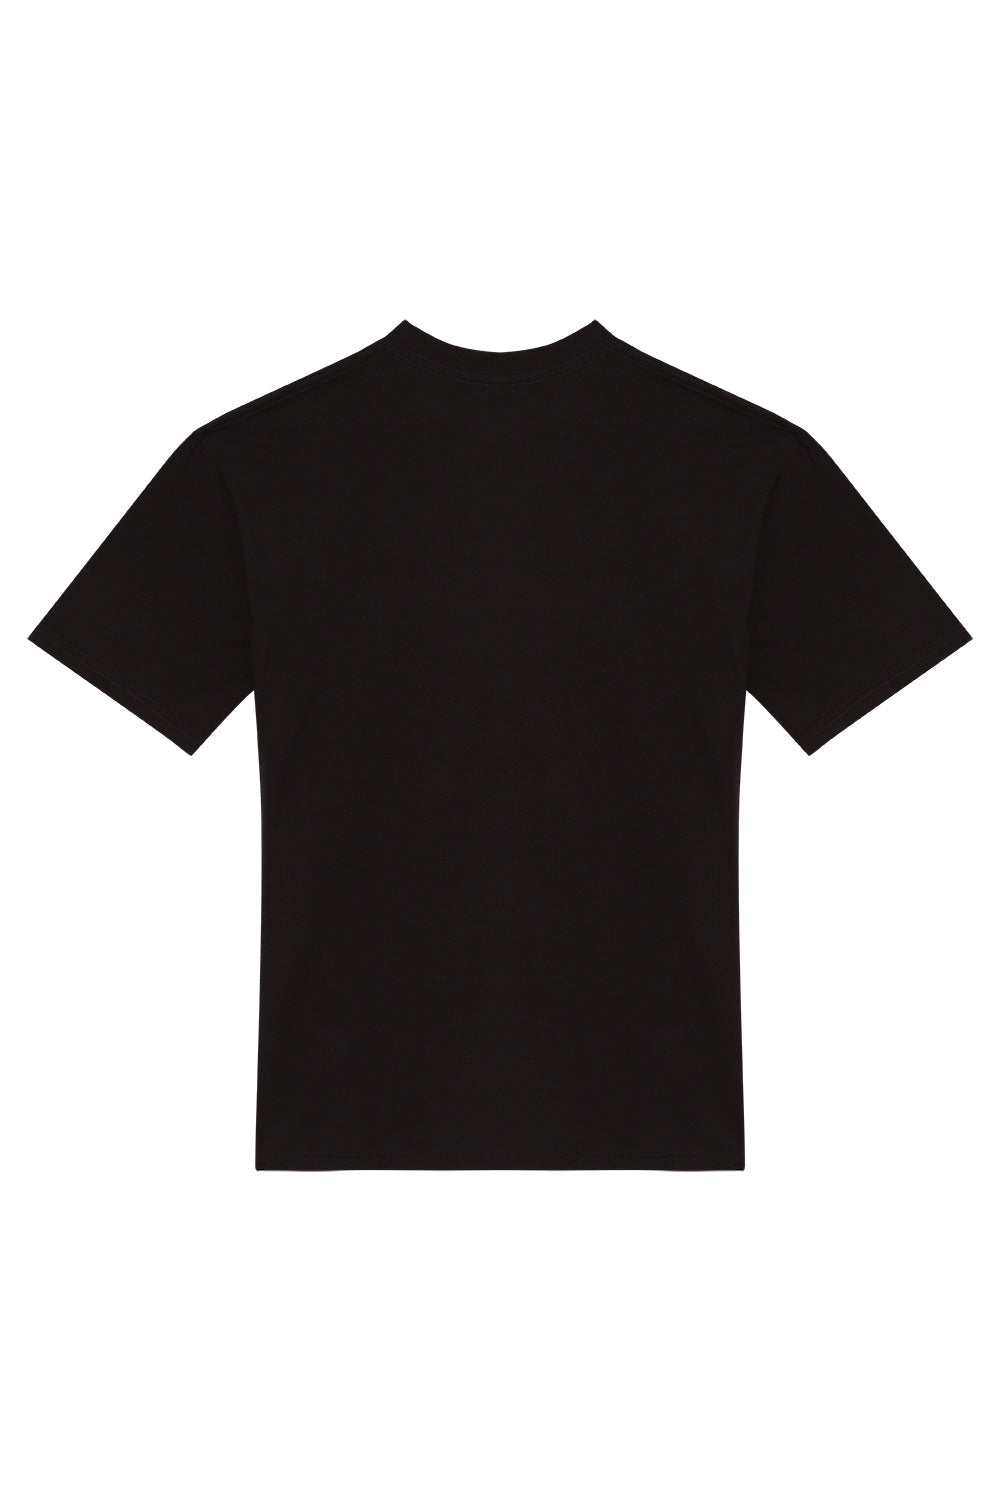 T-Shirt Slyde Black